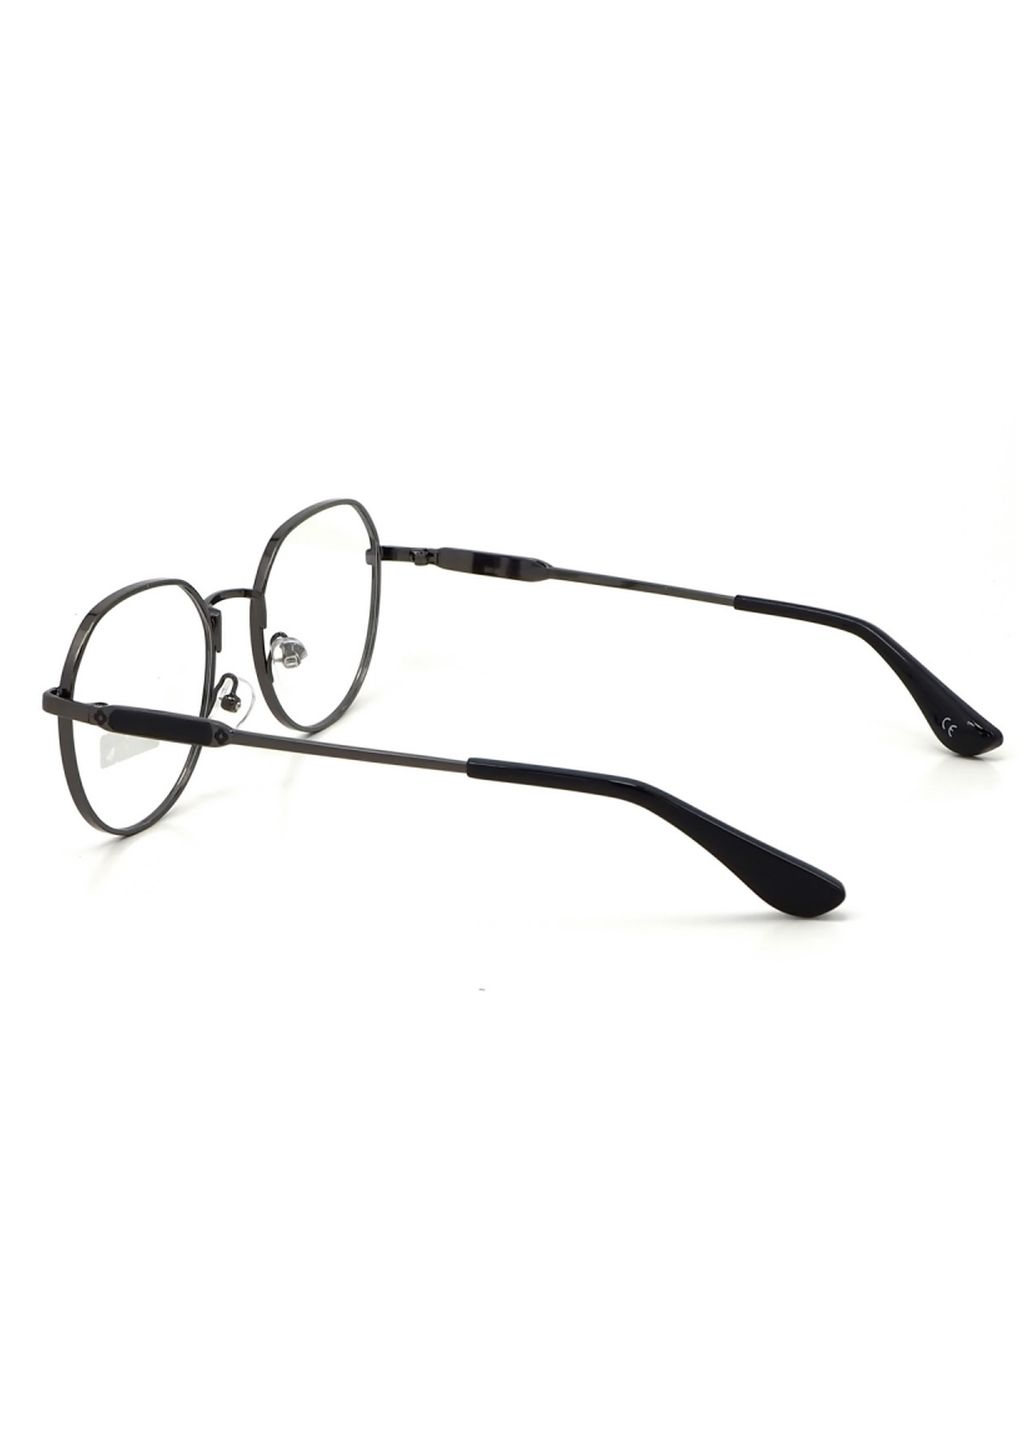 Купить Очки для работы за компьютером Cooper Glasses в серой оправе 124006 в интернет-магазине